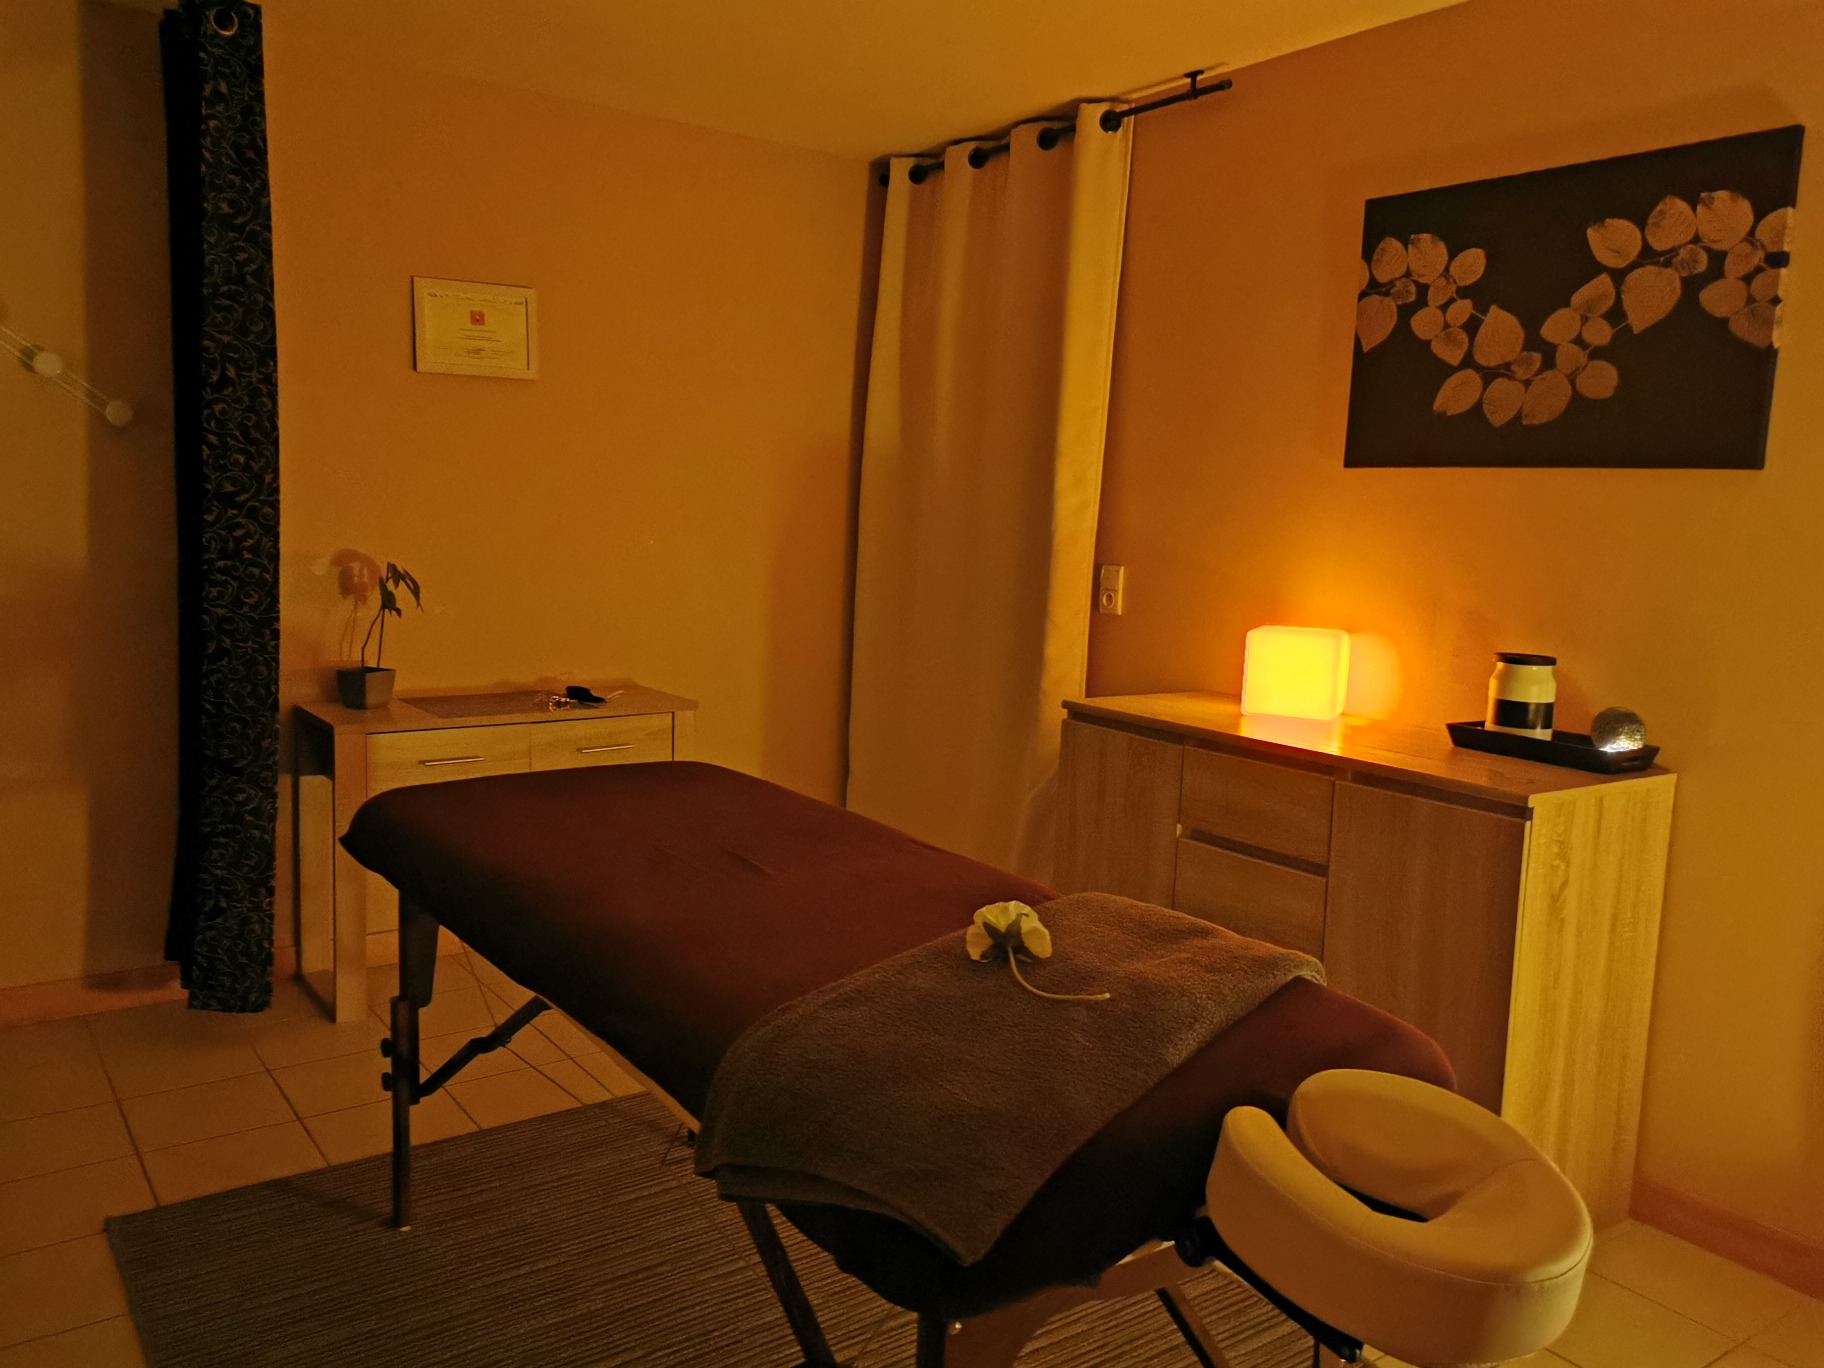 Le cabinet 1 est meublé pour les pratiques corporelles : Massage, Réflexologie, Relaxation, Shiatsu, Reiki, Acuponcture, Ostéopathie, Aromathérapie et autres méthodes alternatives prenant soin du corps.